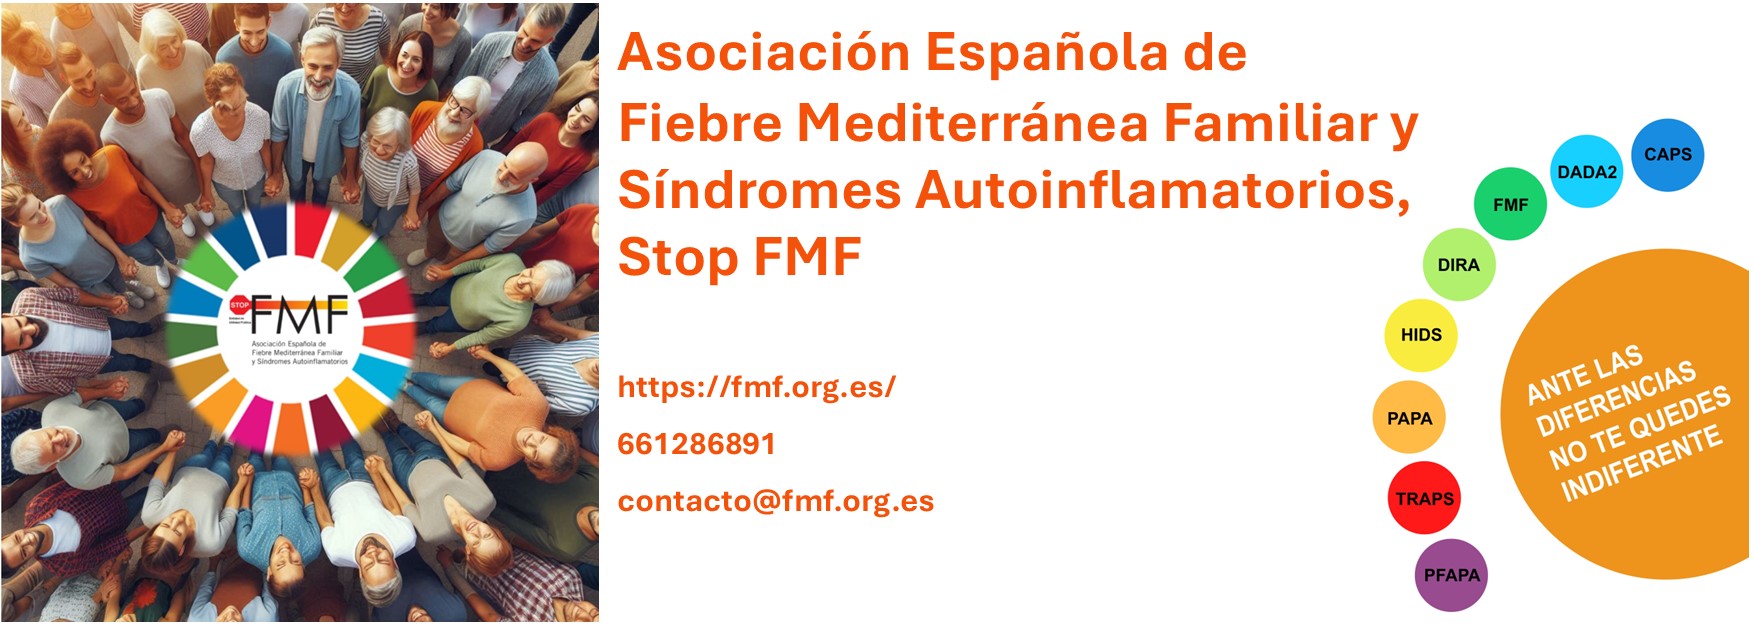 Asociación Española de Fiebre Mediterránea Familiar y Síndromes Autoinflamatorios Stop FMF1